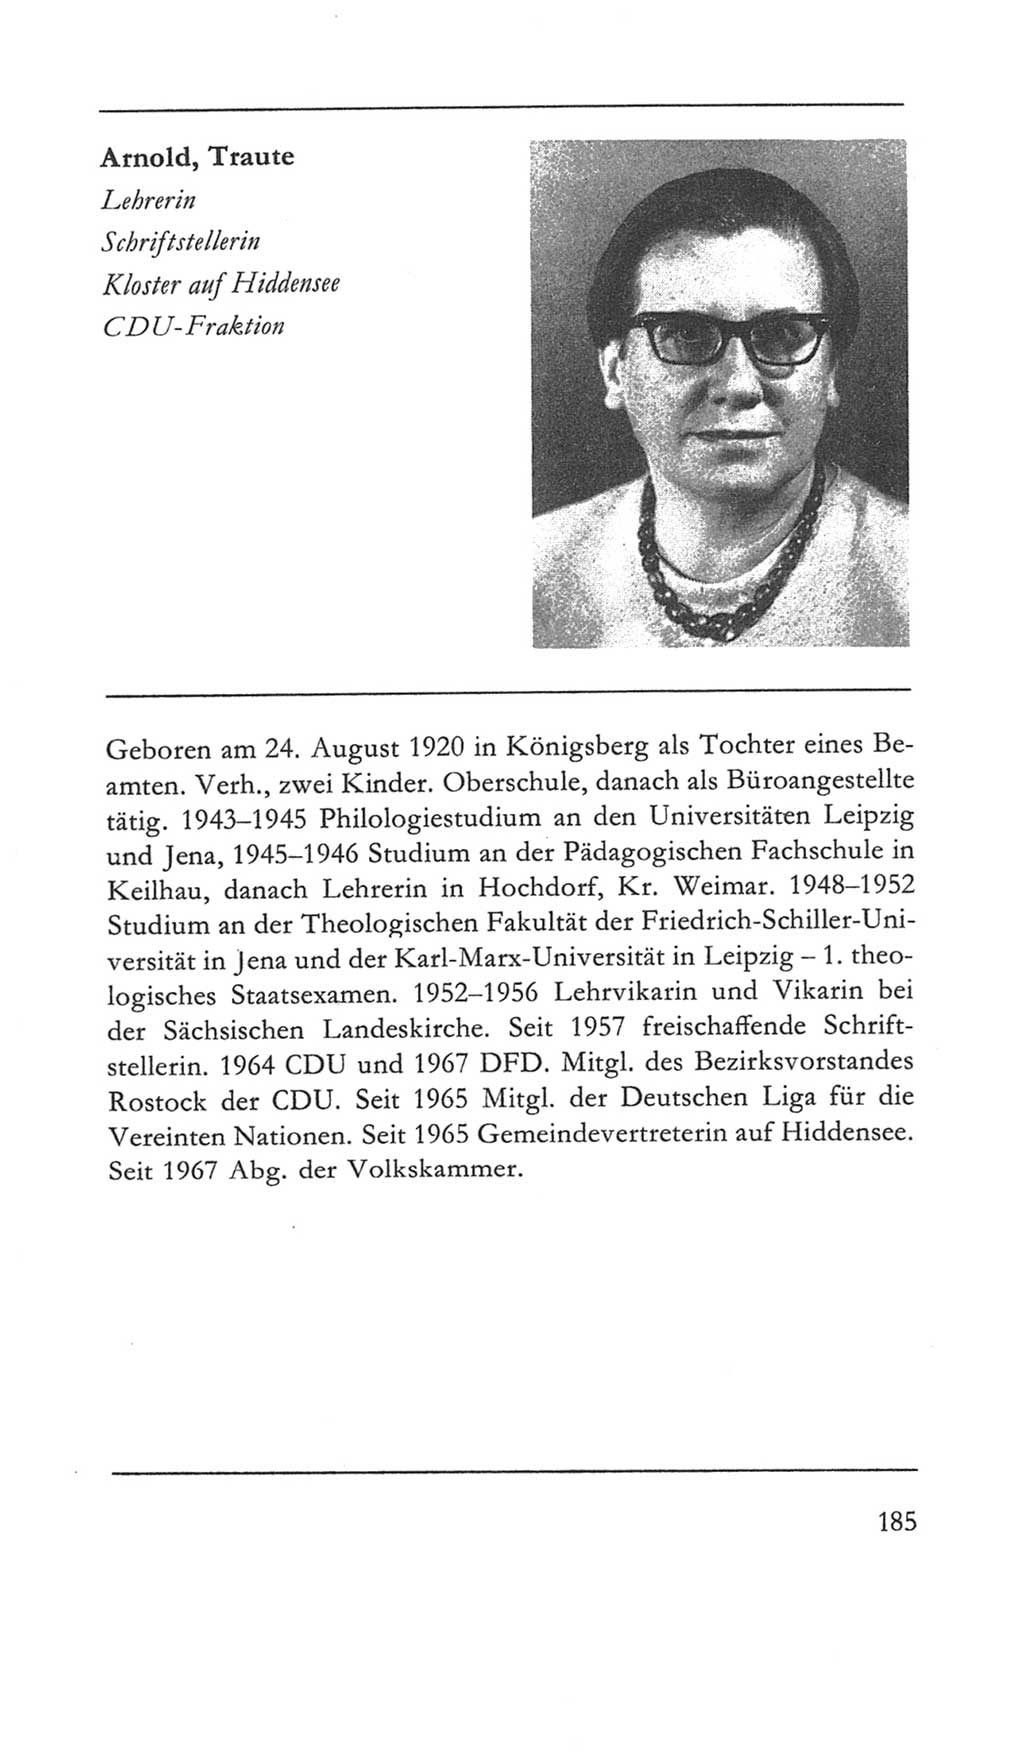 Volkskammer (VK) der Deutschen Demokratischen Republik (DDR) 5. Wahlperiode 1967-1971, Seite 185 (VK. DDR 5. WP. 1967-1971, S. 185)